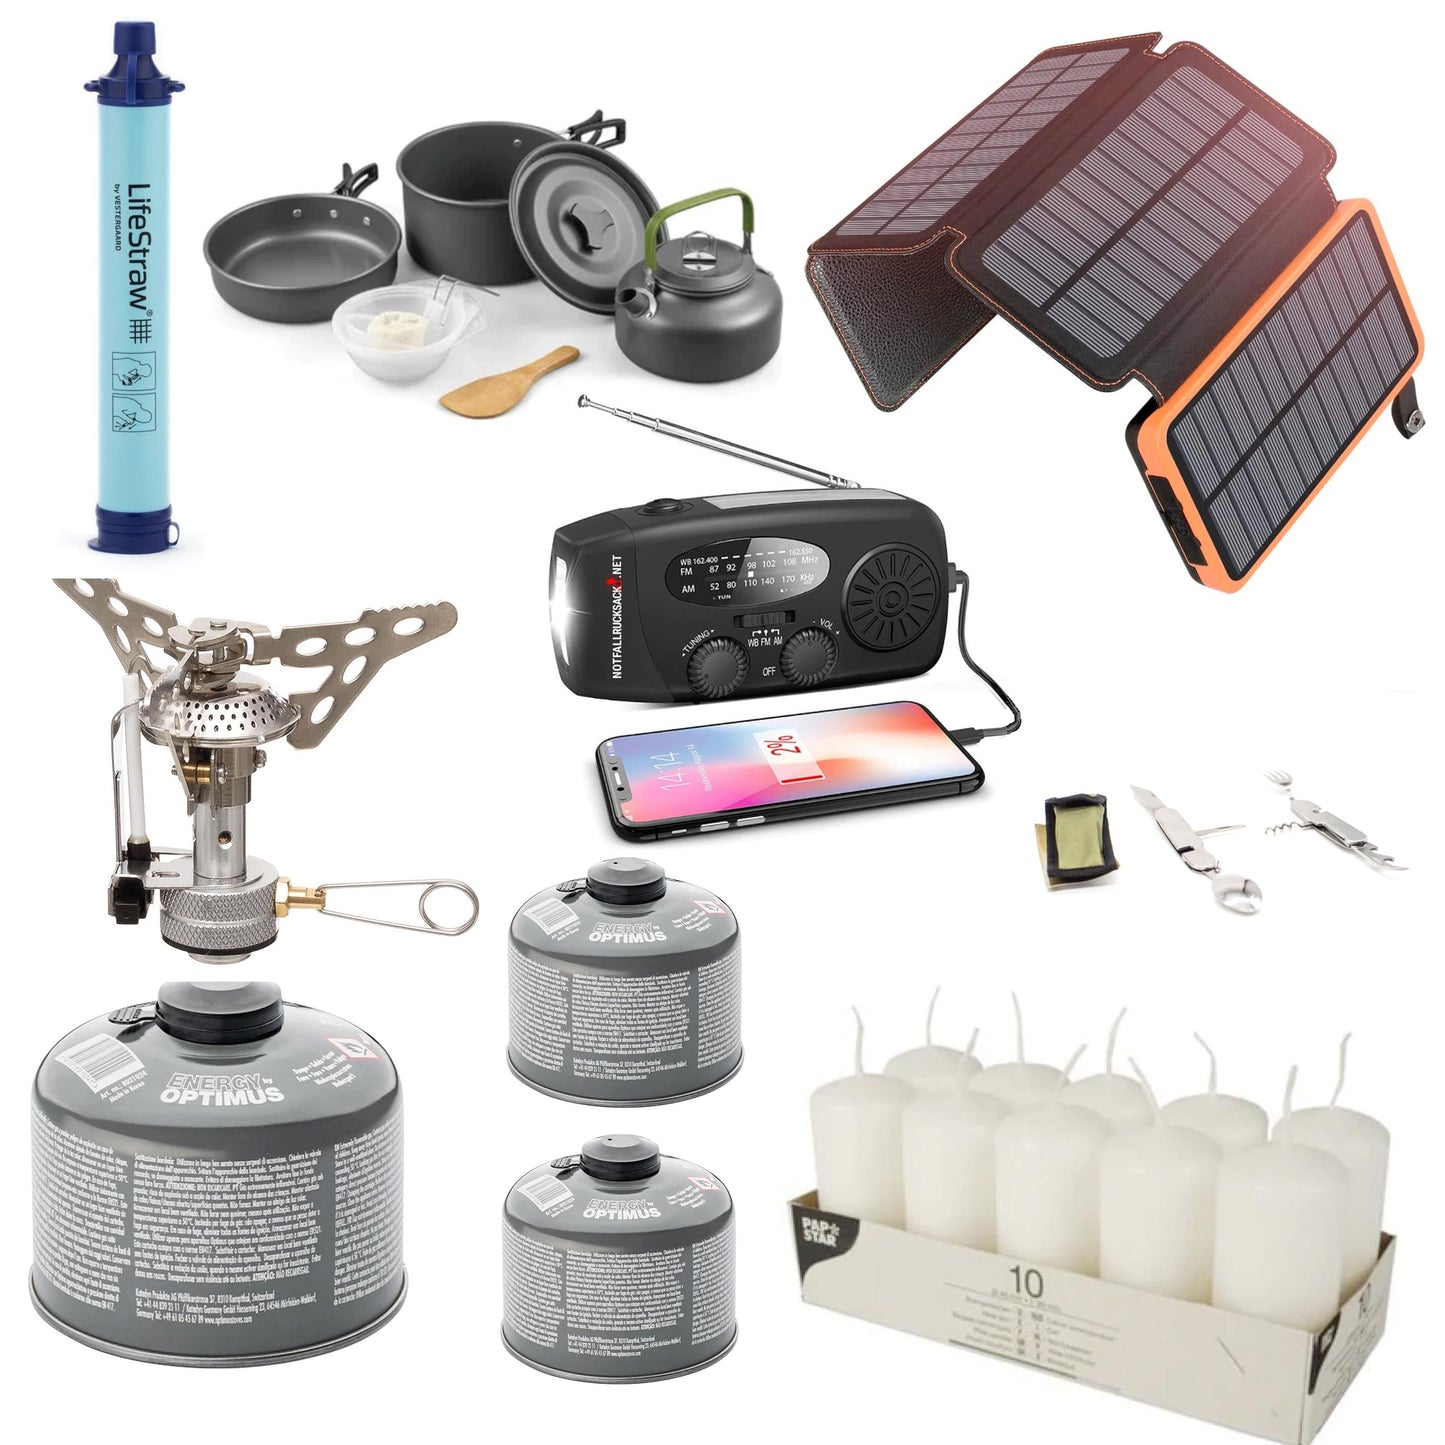 Maitinimo trikčių paketas Extreme Blackout rinkinys - su mega elektrine, saulės baterija, dujine virykle, virimo rinkiniu, stalo įrankiais, saulės energijos banku, vandens filtru, žvakėmis ir daug daugiau